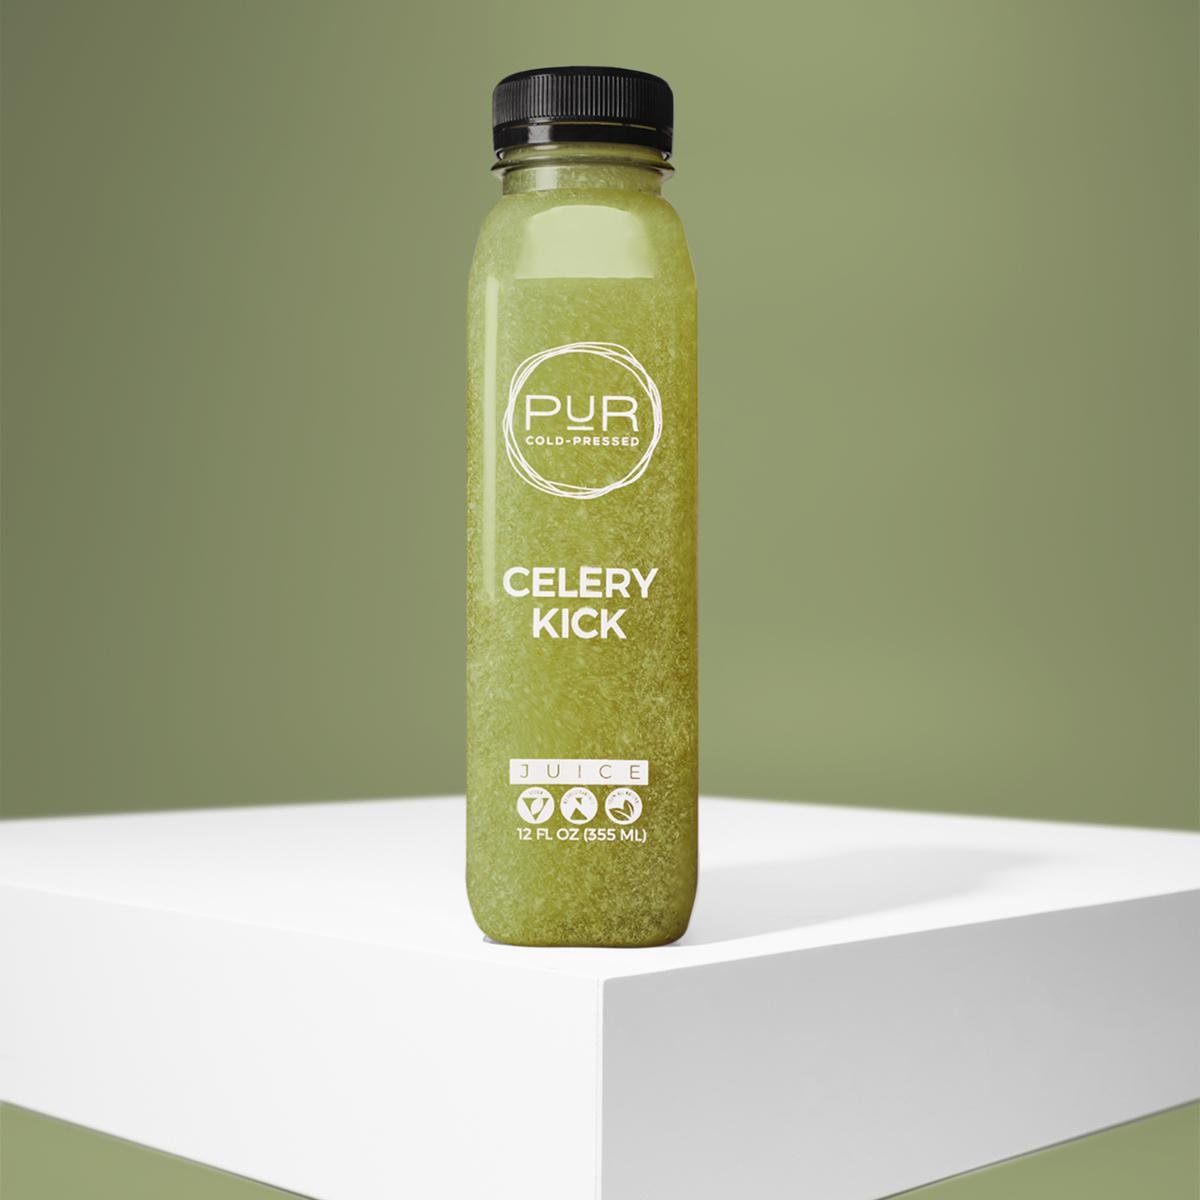 PUR juice cleanse cold pressed juice CELERY KICK  Celery Juice Detox | Celery Kick Juice | PUR Individual Juice